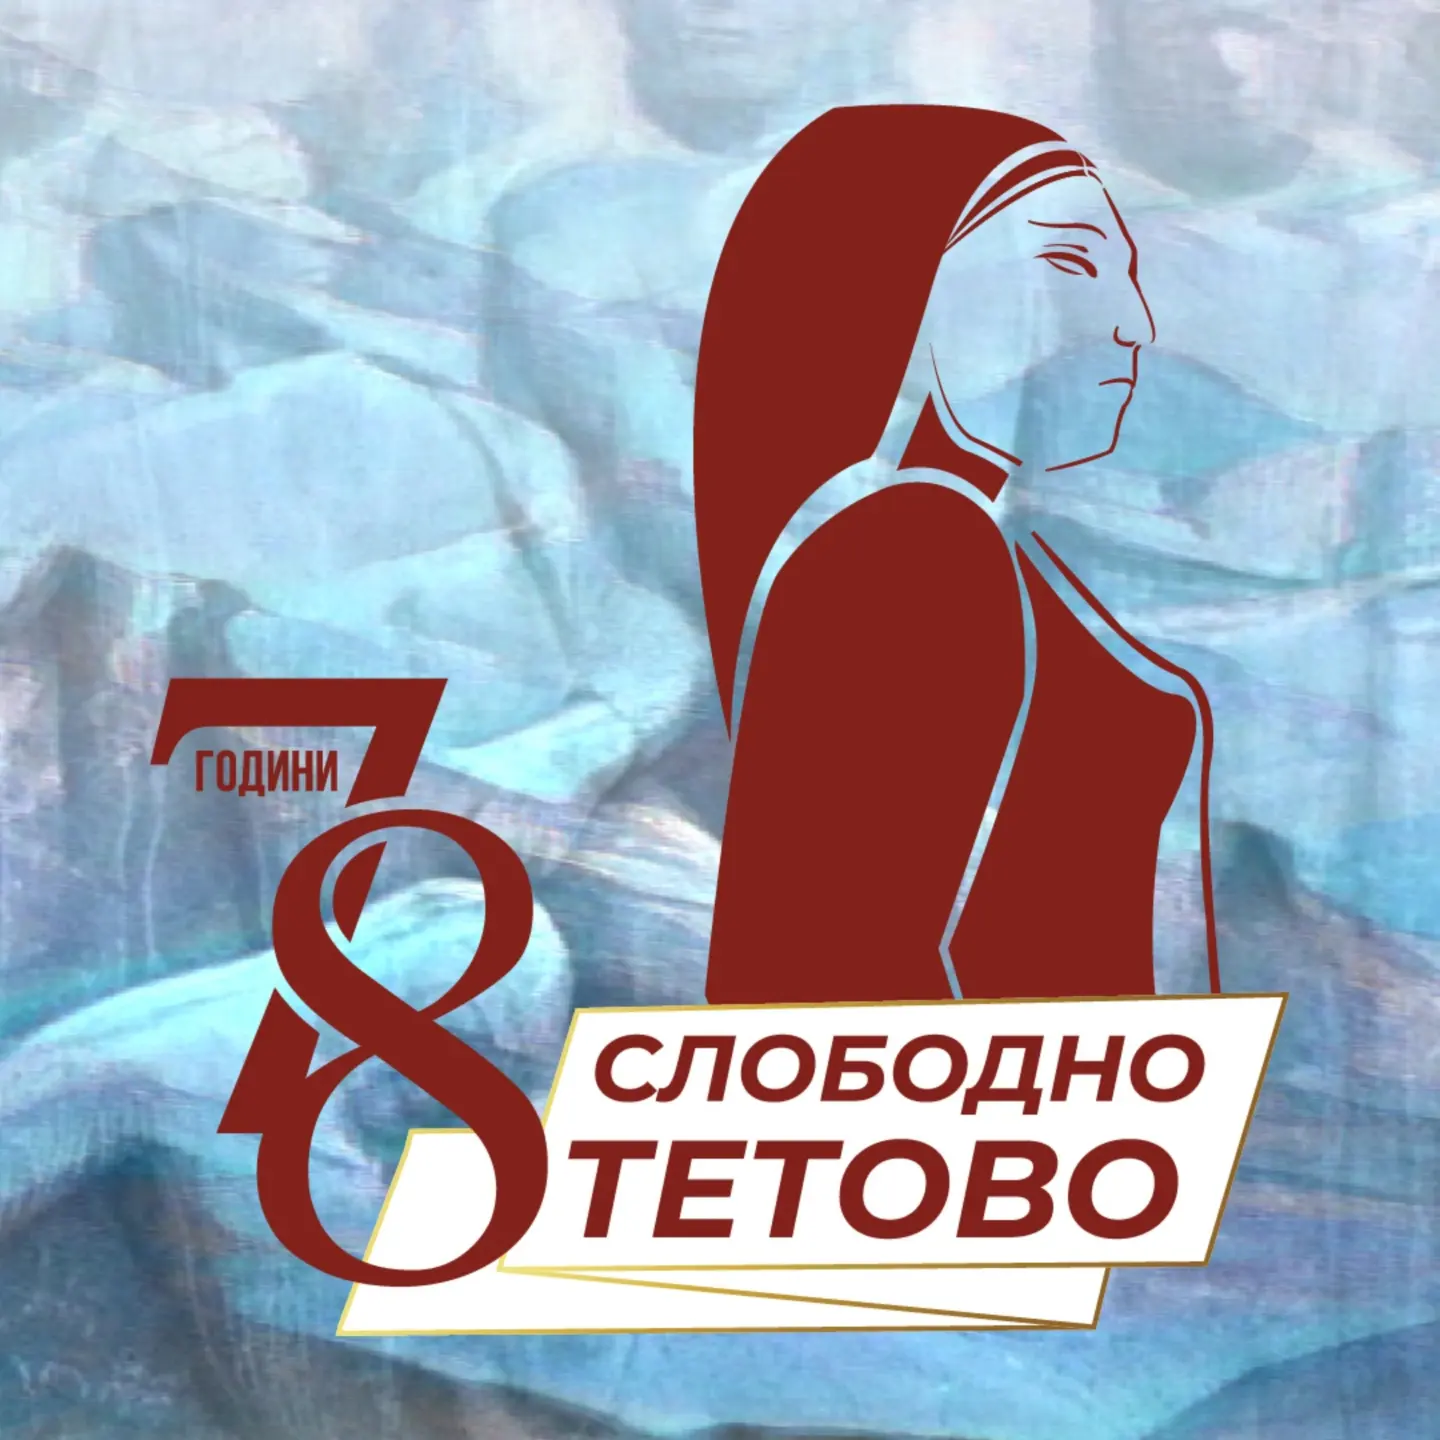 19 Ноември - Денот на ослободување на Тетово